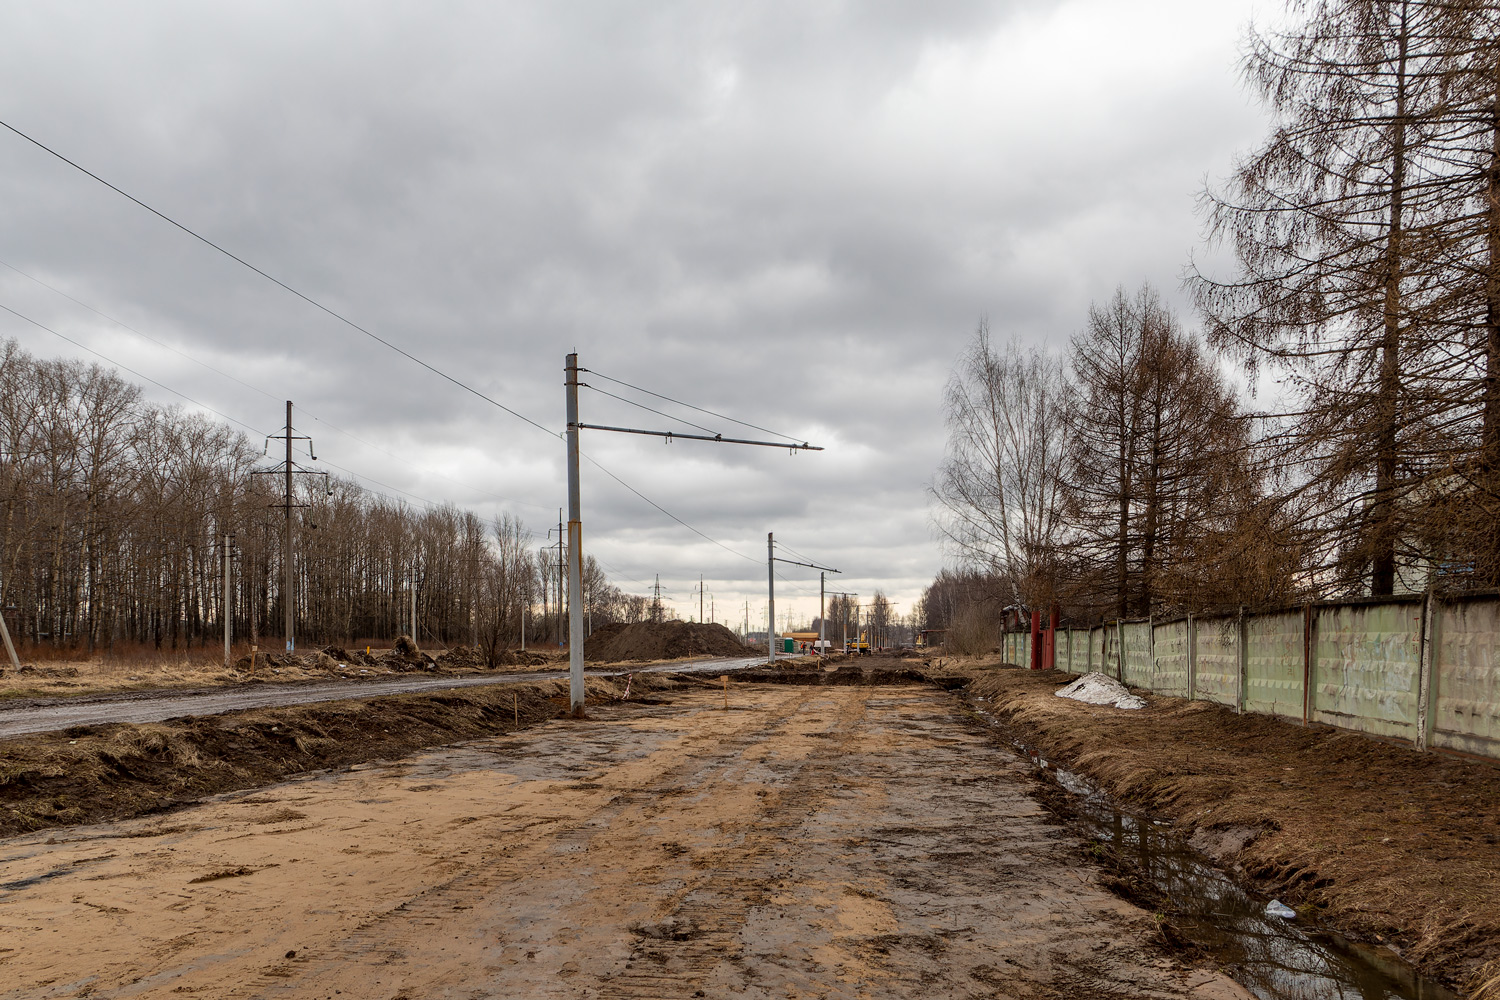 雅羅斯拉夫爾 — Reconstruction of the tram lines under the concession agreement. Stage #1